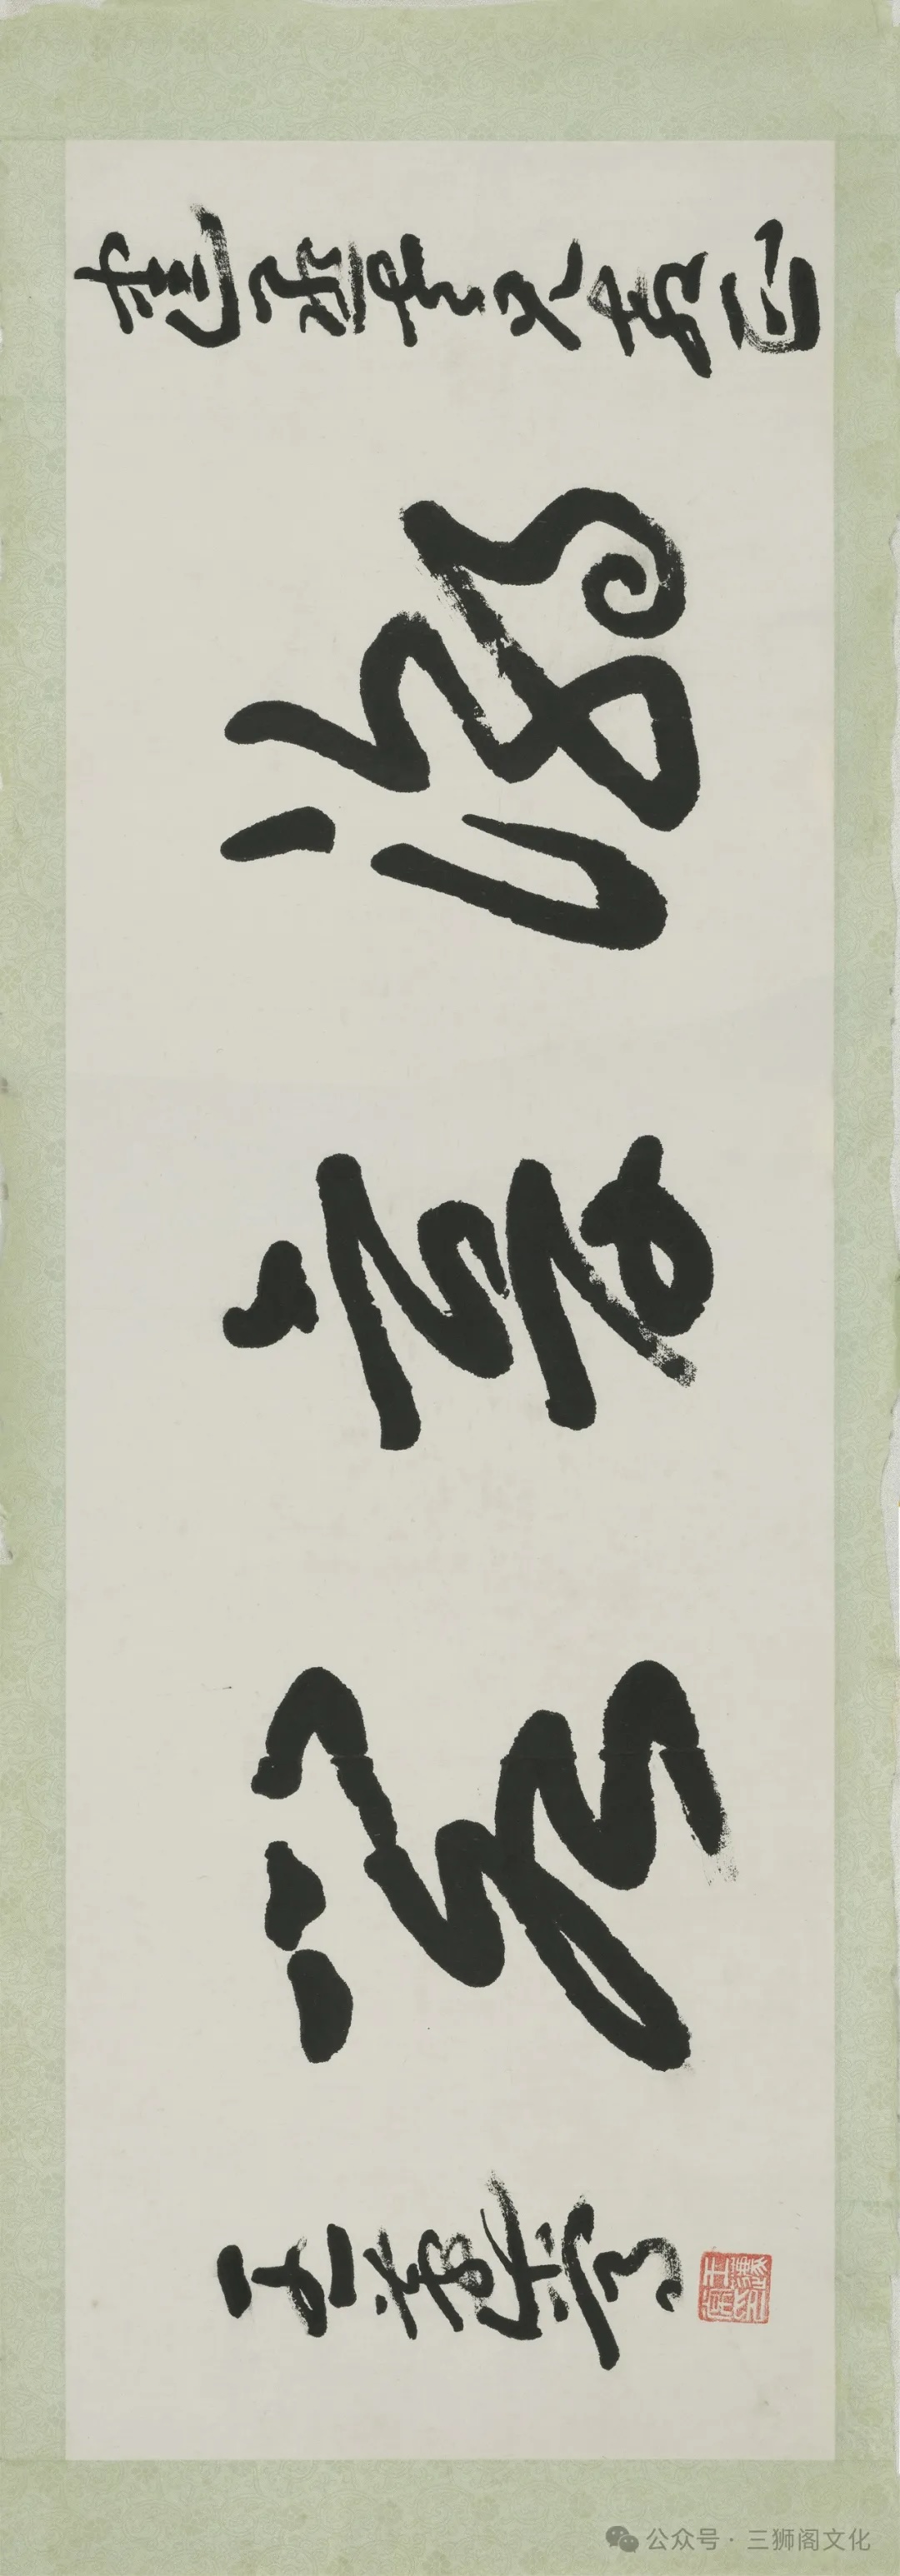 王蘧常，《潮音阁横匾》 纸本，横幅 33.5cm×100.5cm